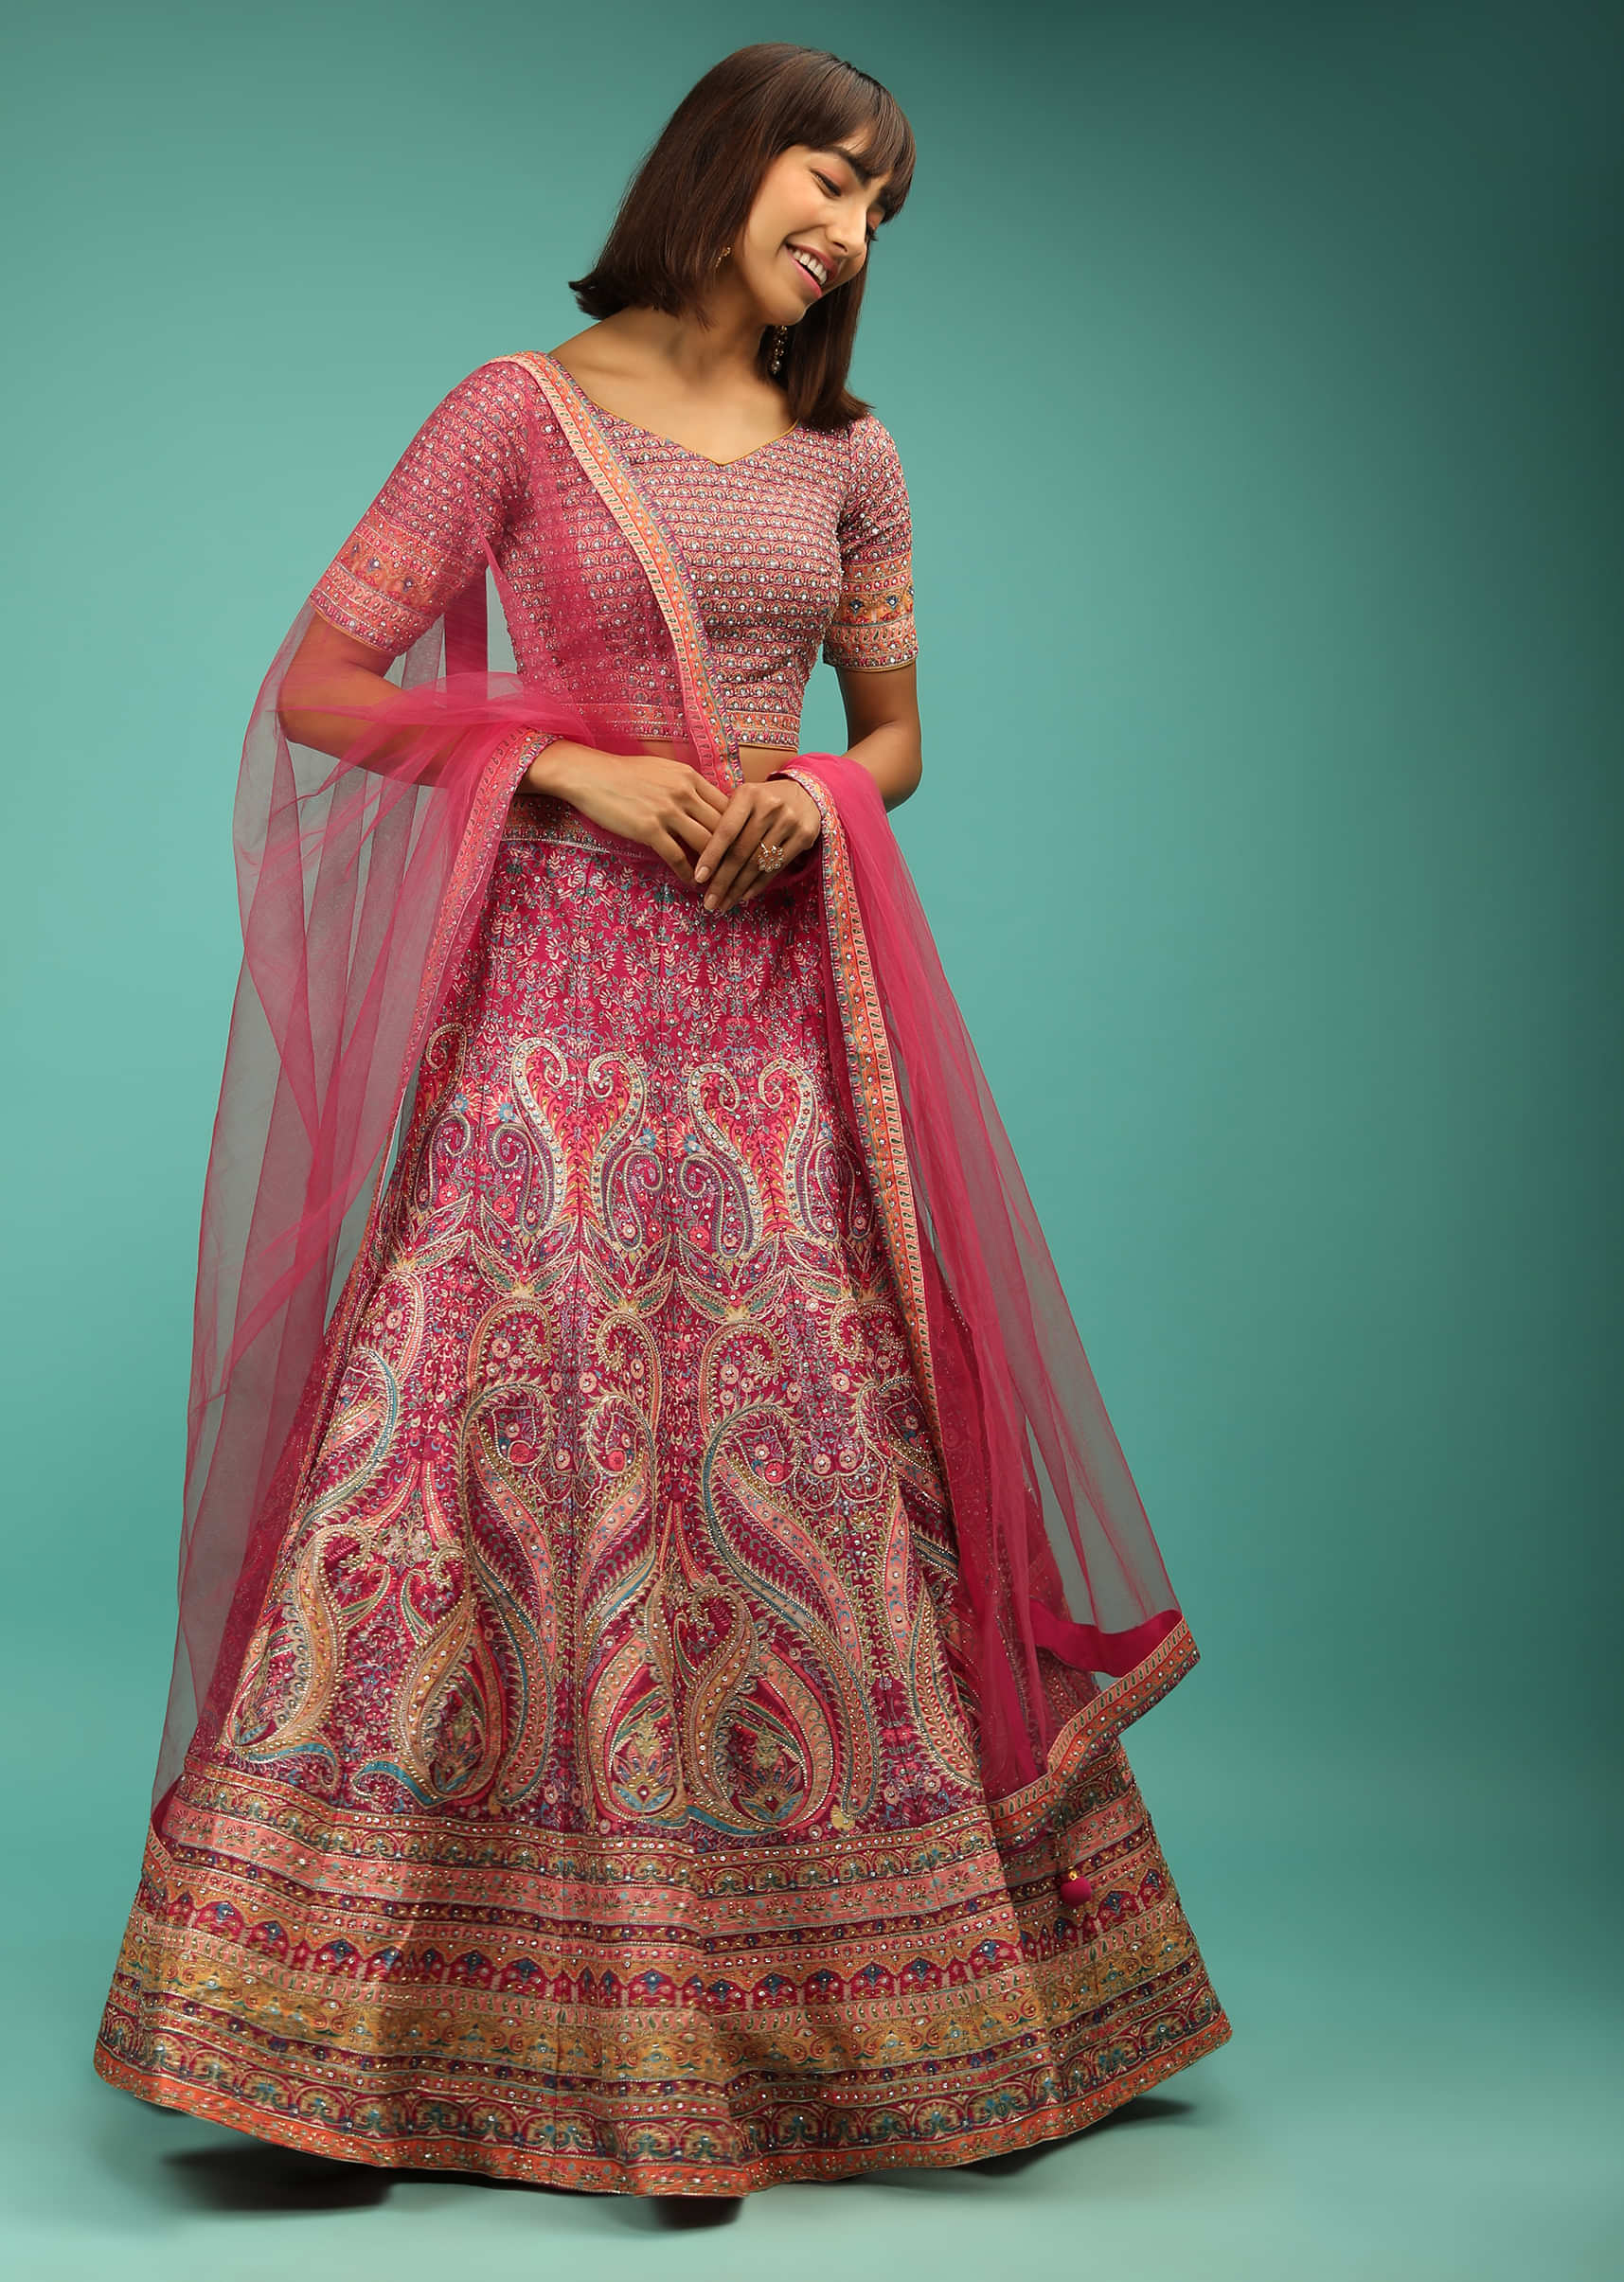 Rani Pink Lehenga Choli With Ethnic Floral Print And Zari Accents 